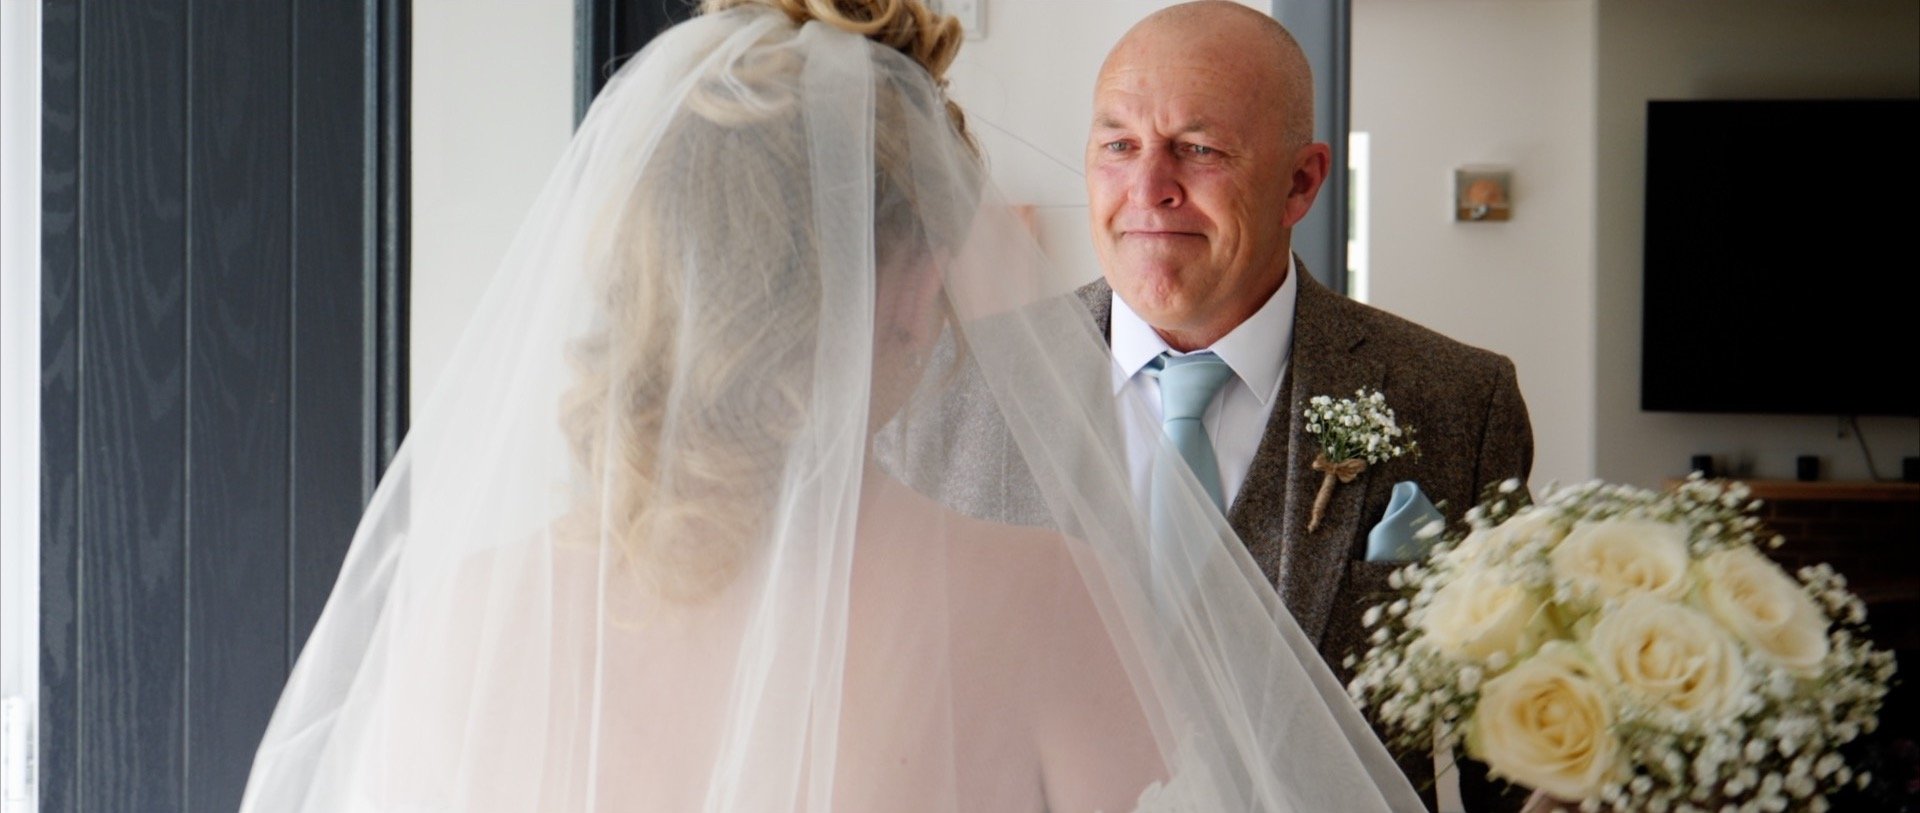 Dad reveal to bride Essex wedding videos 3 Cheers Media.jpg